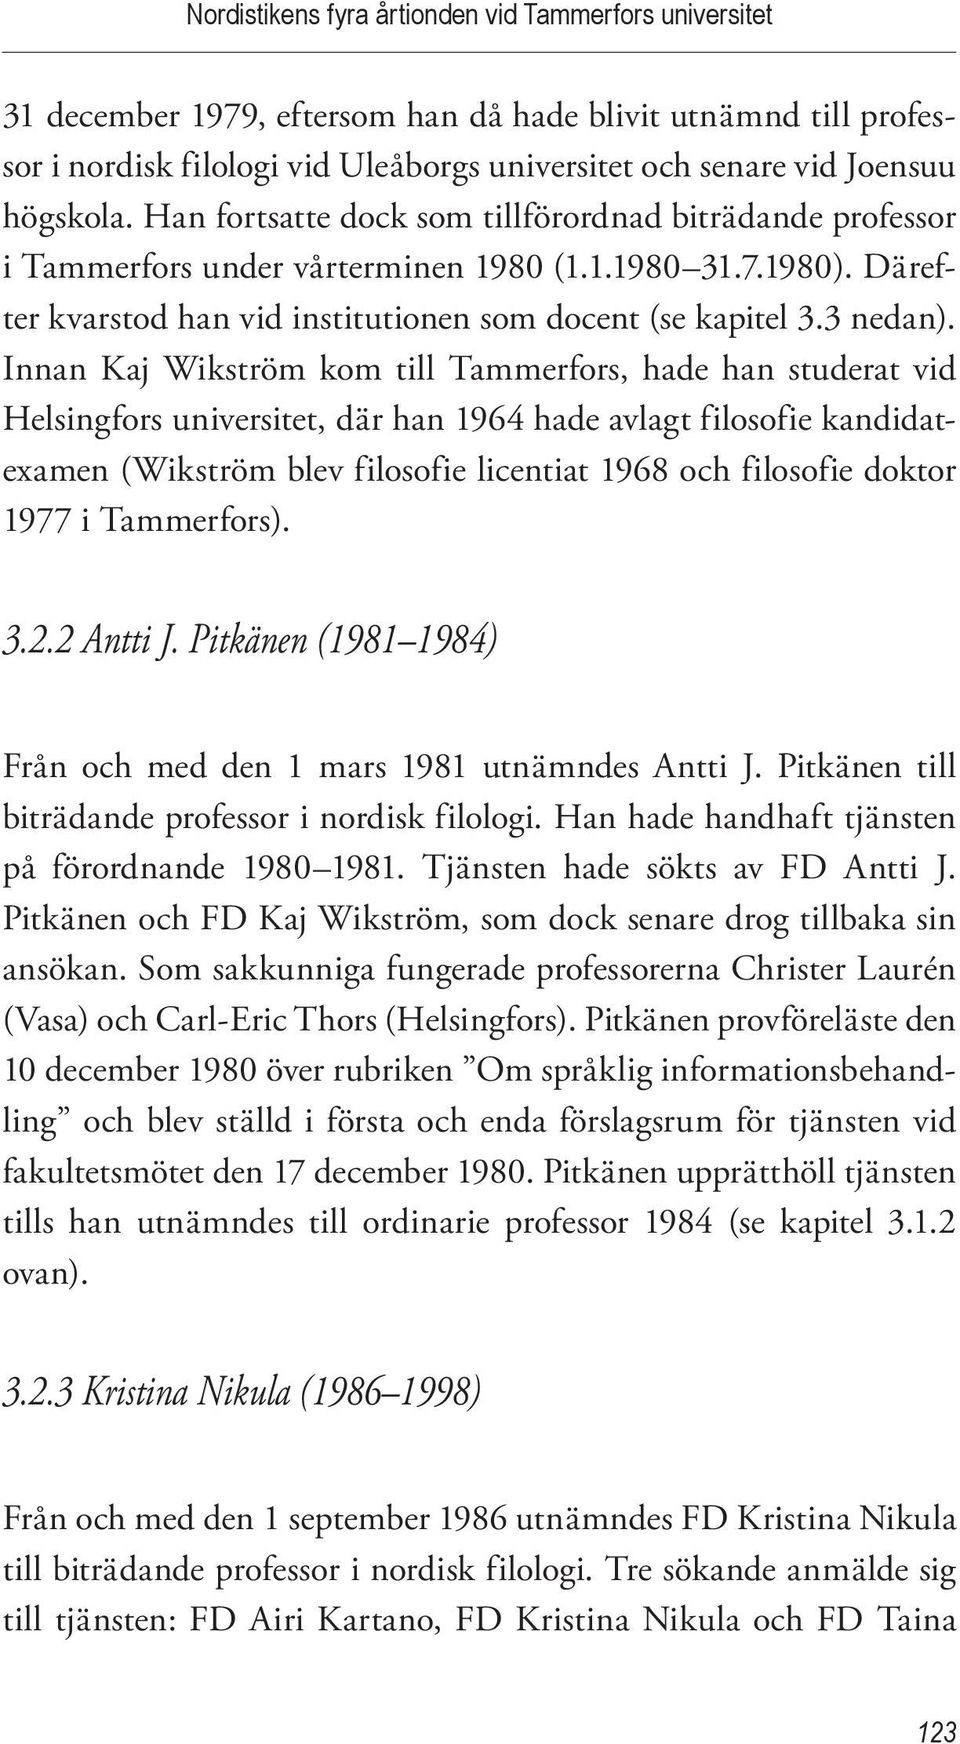 Innan Kaj Wikström kom till Tammerfors, hade han studerat vid Helsingfors universitet, där han 1964 hade avlagt filosofie kandidatexamen (Wikström blev filosofie licentiat 1968 och filosofie doktor